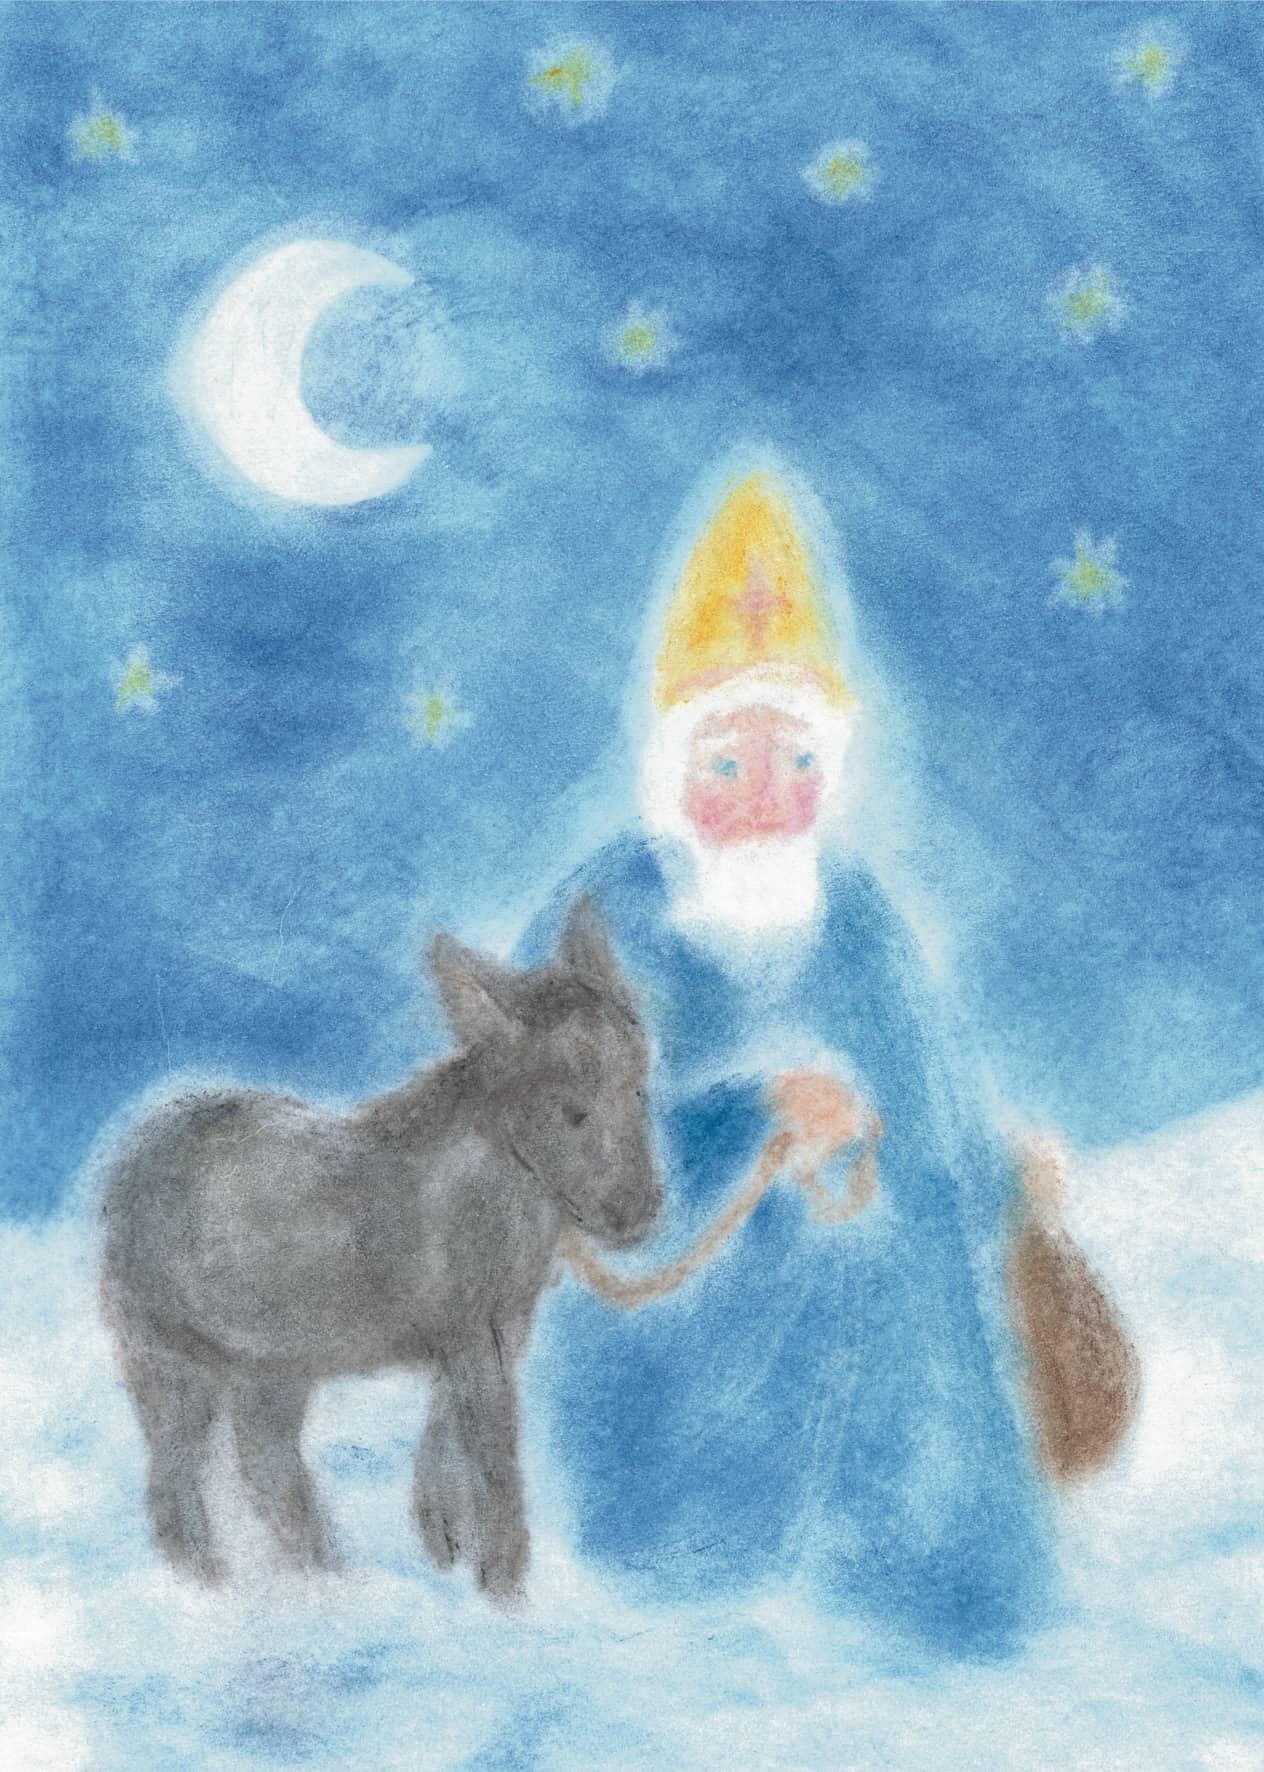 Seccorell Postkarte "Nikolaus" zeigt den heiligen Nikolaus mit einem Esel unter einem sternklaren Nachthimmel, gemalt mit Seccorell-Farben.